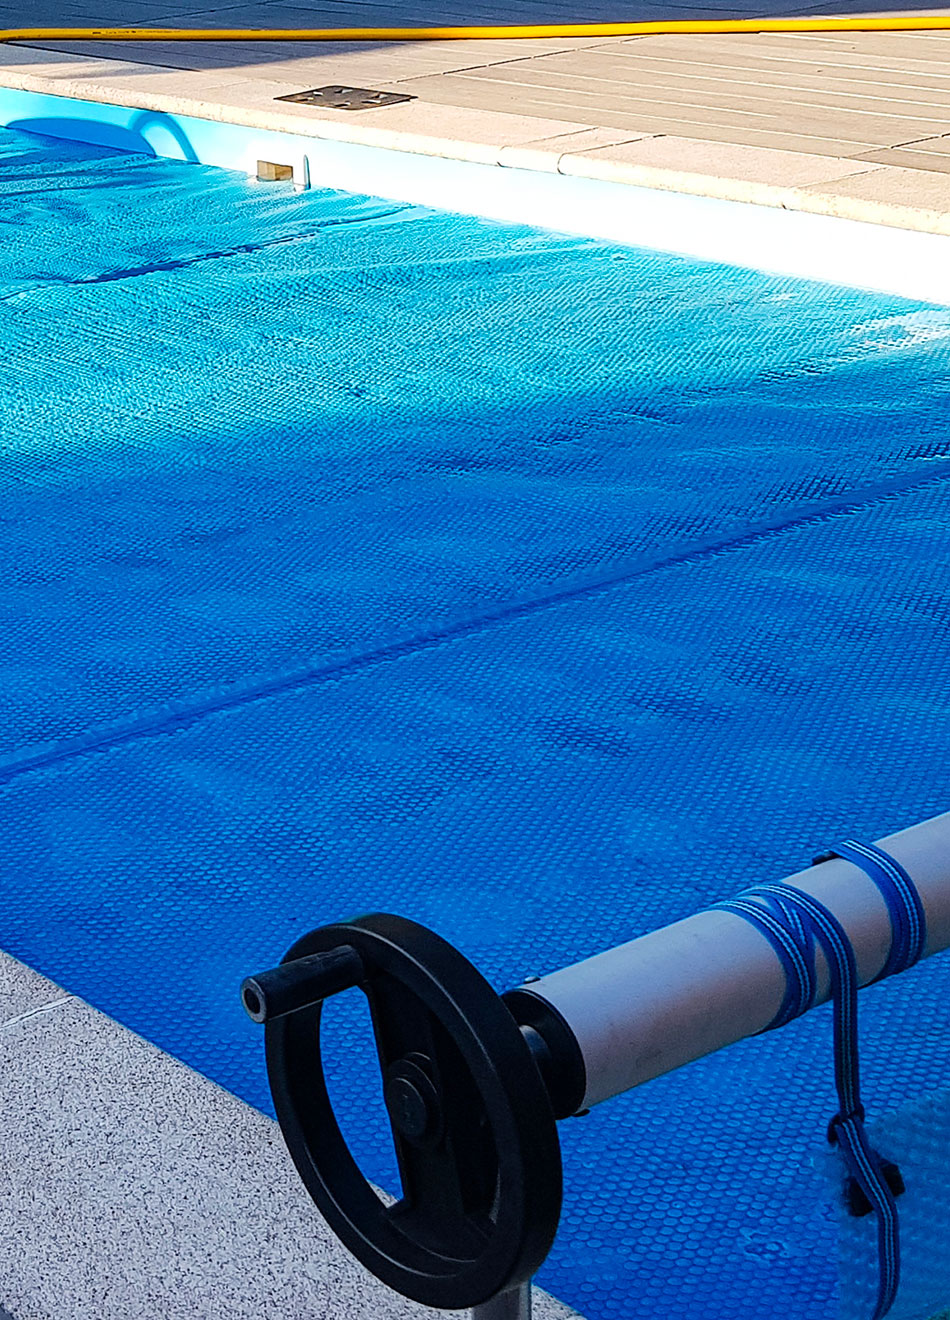 Couverture de piscine bleue partiellement enroulée sur un mécanisme de bobinage près du bord de la piscine.